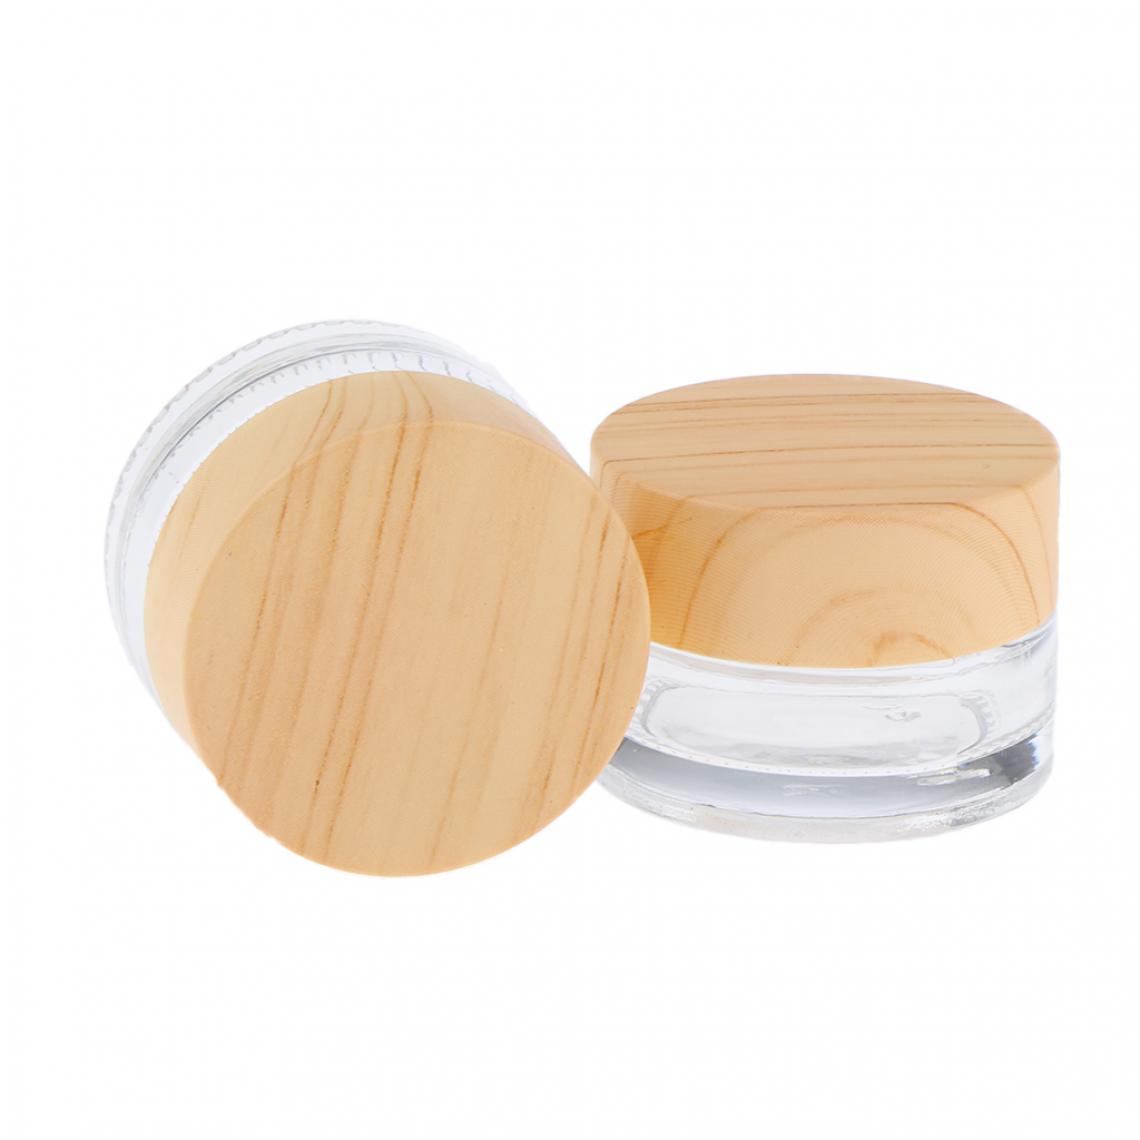 marque generique - 2 pots de maquillage vases cosmétiques vides Lotion crème Contenants de gel clair 50g - Maquillage et coiffure